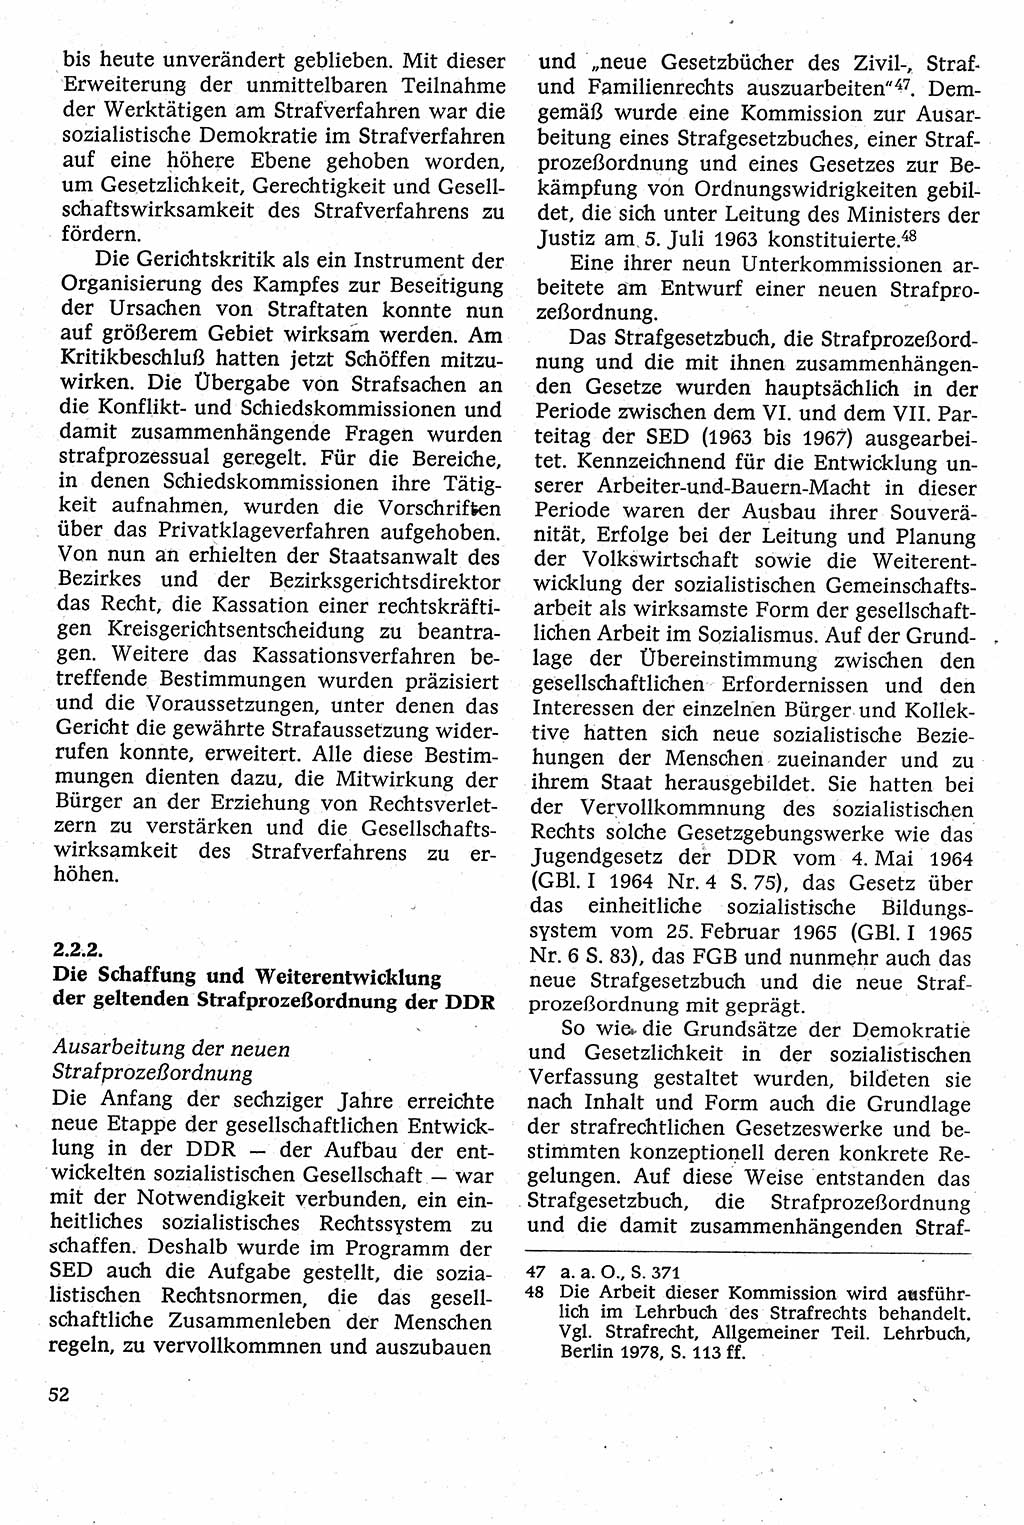 Strafverfahrensrecht [Deutsche Demokratische Republik (DDR)], Lehrbuch 1982, Seite 52 (Strafverf.-R. DDR Lb. 1982, S. 52)